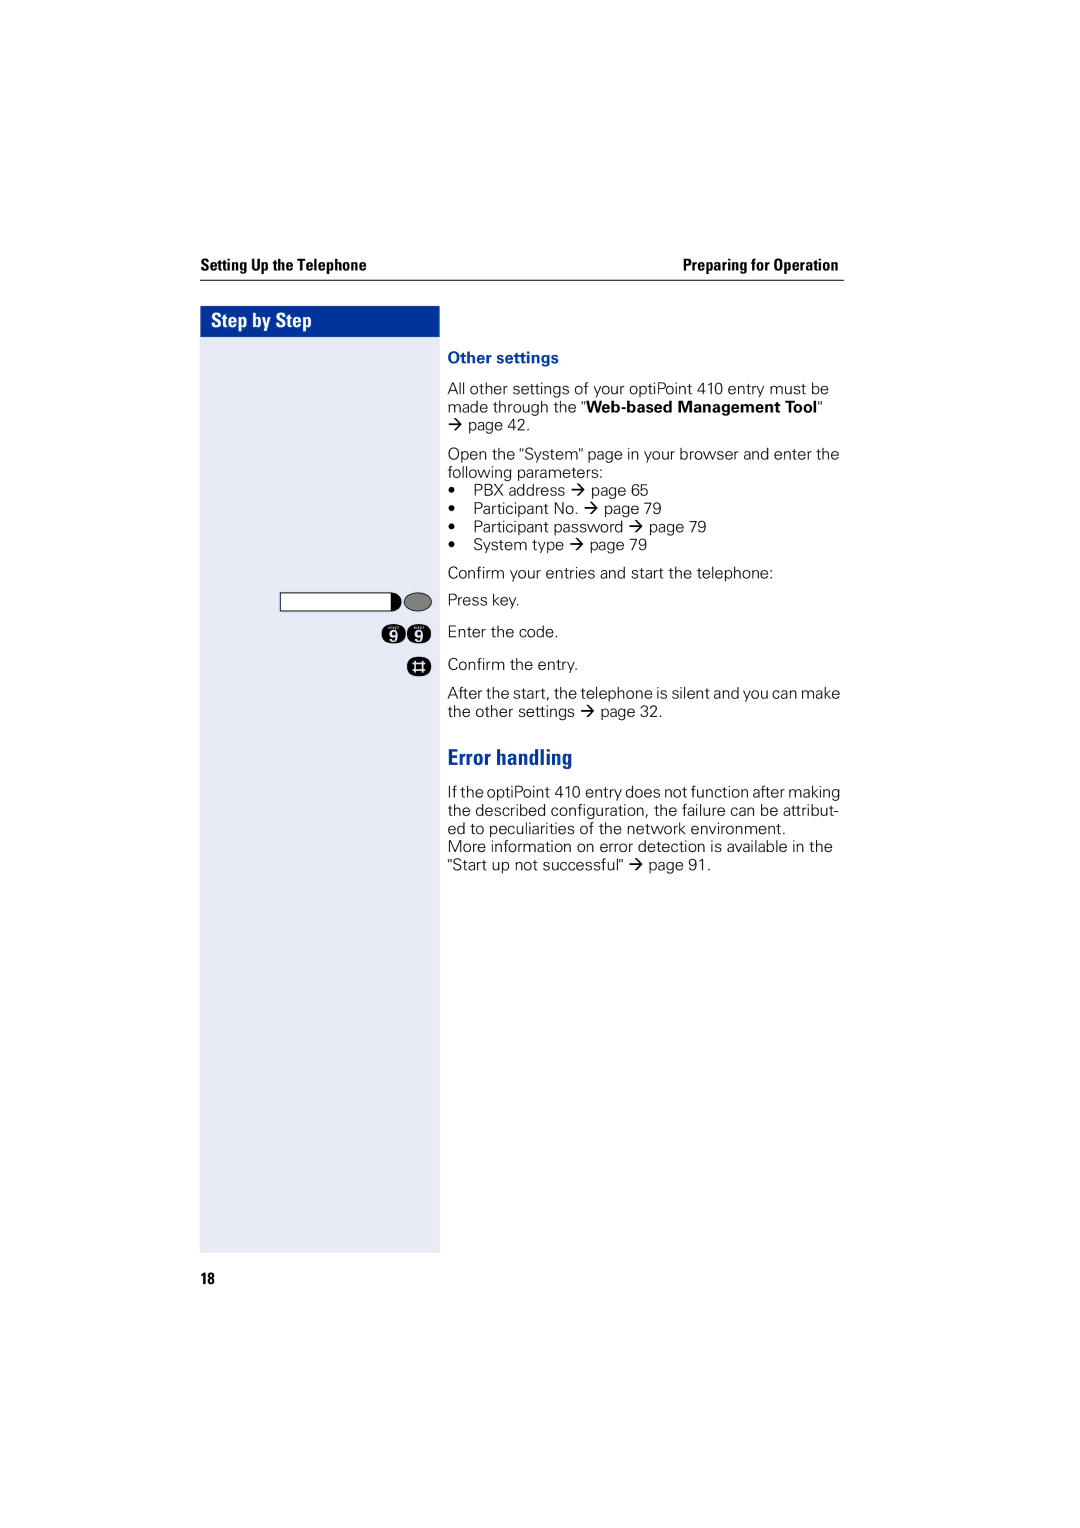 Siemens 2000 manual Error handling, Other settings 